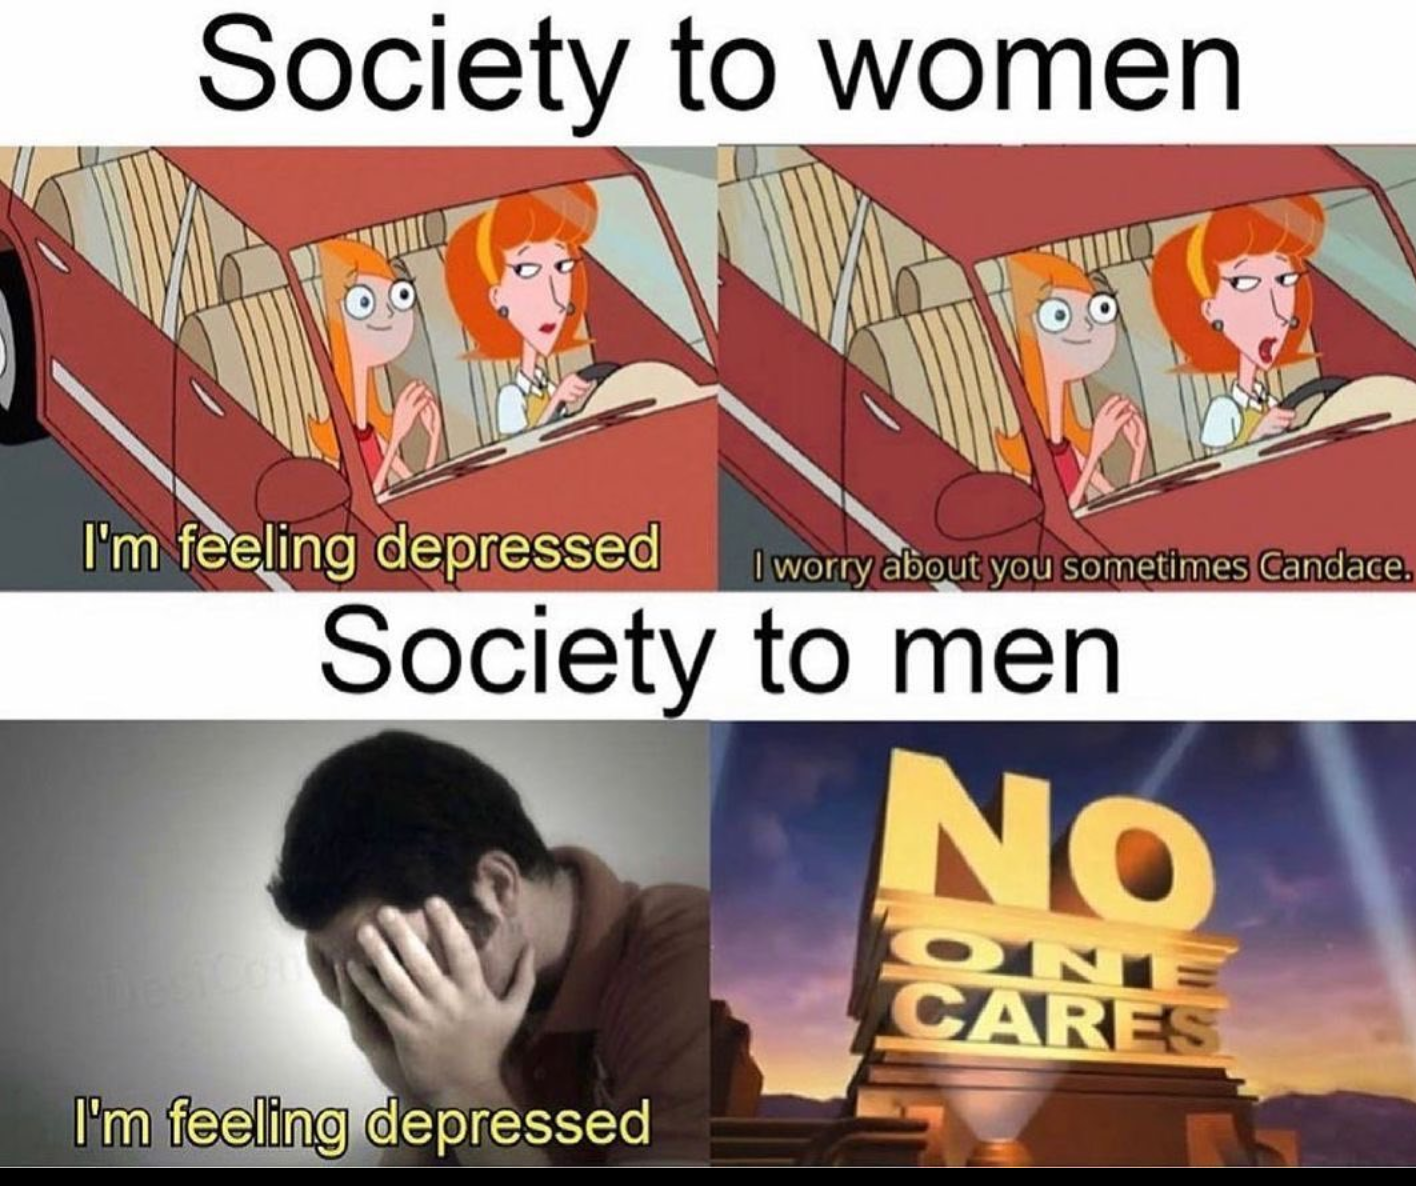 Men do have feelings too